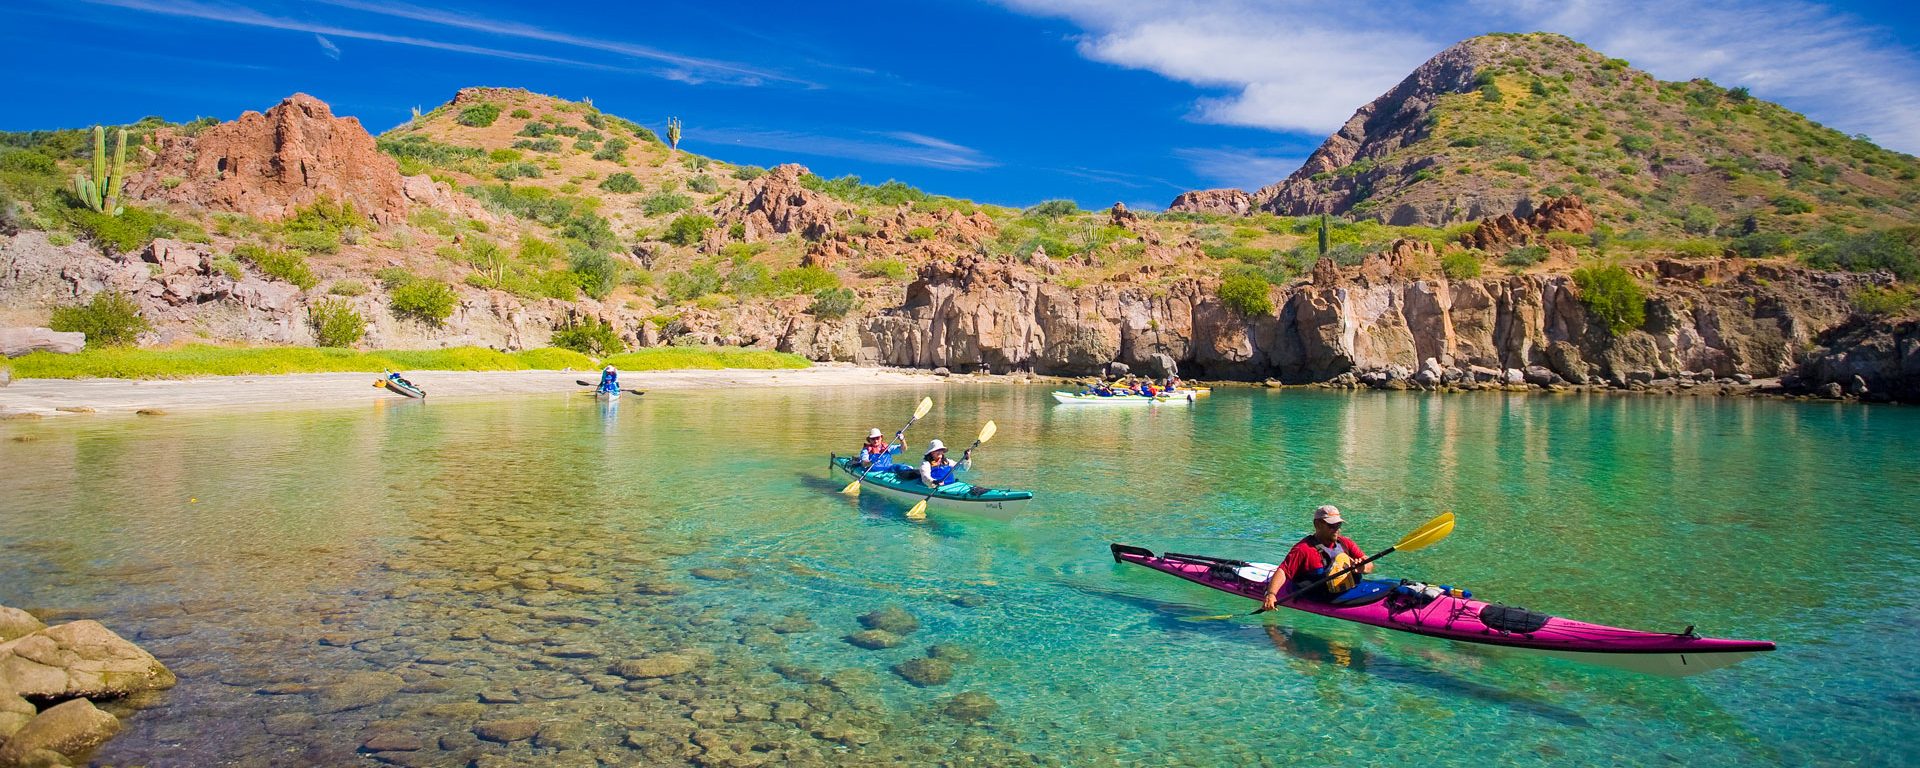 Sea Kayakers in crystalline waters, Honeymoon Cove, Baja, Mexico